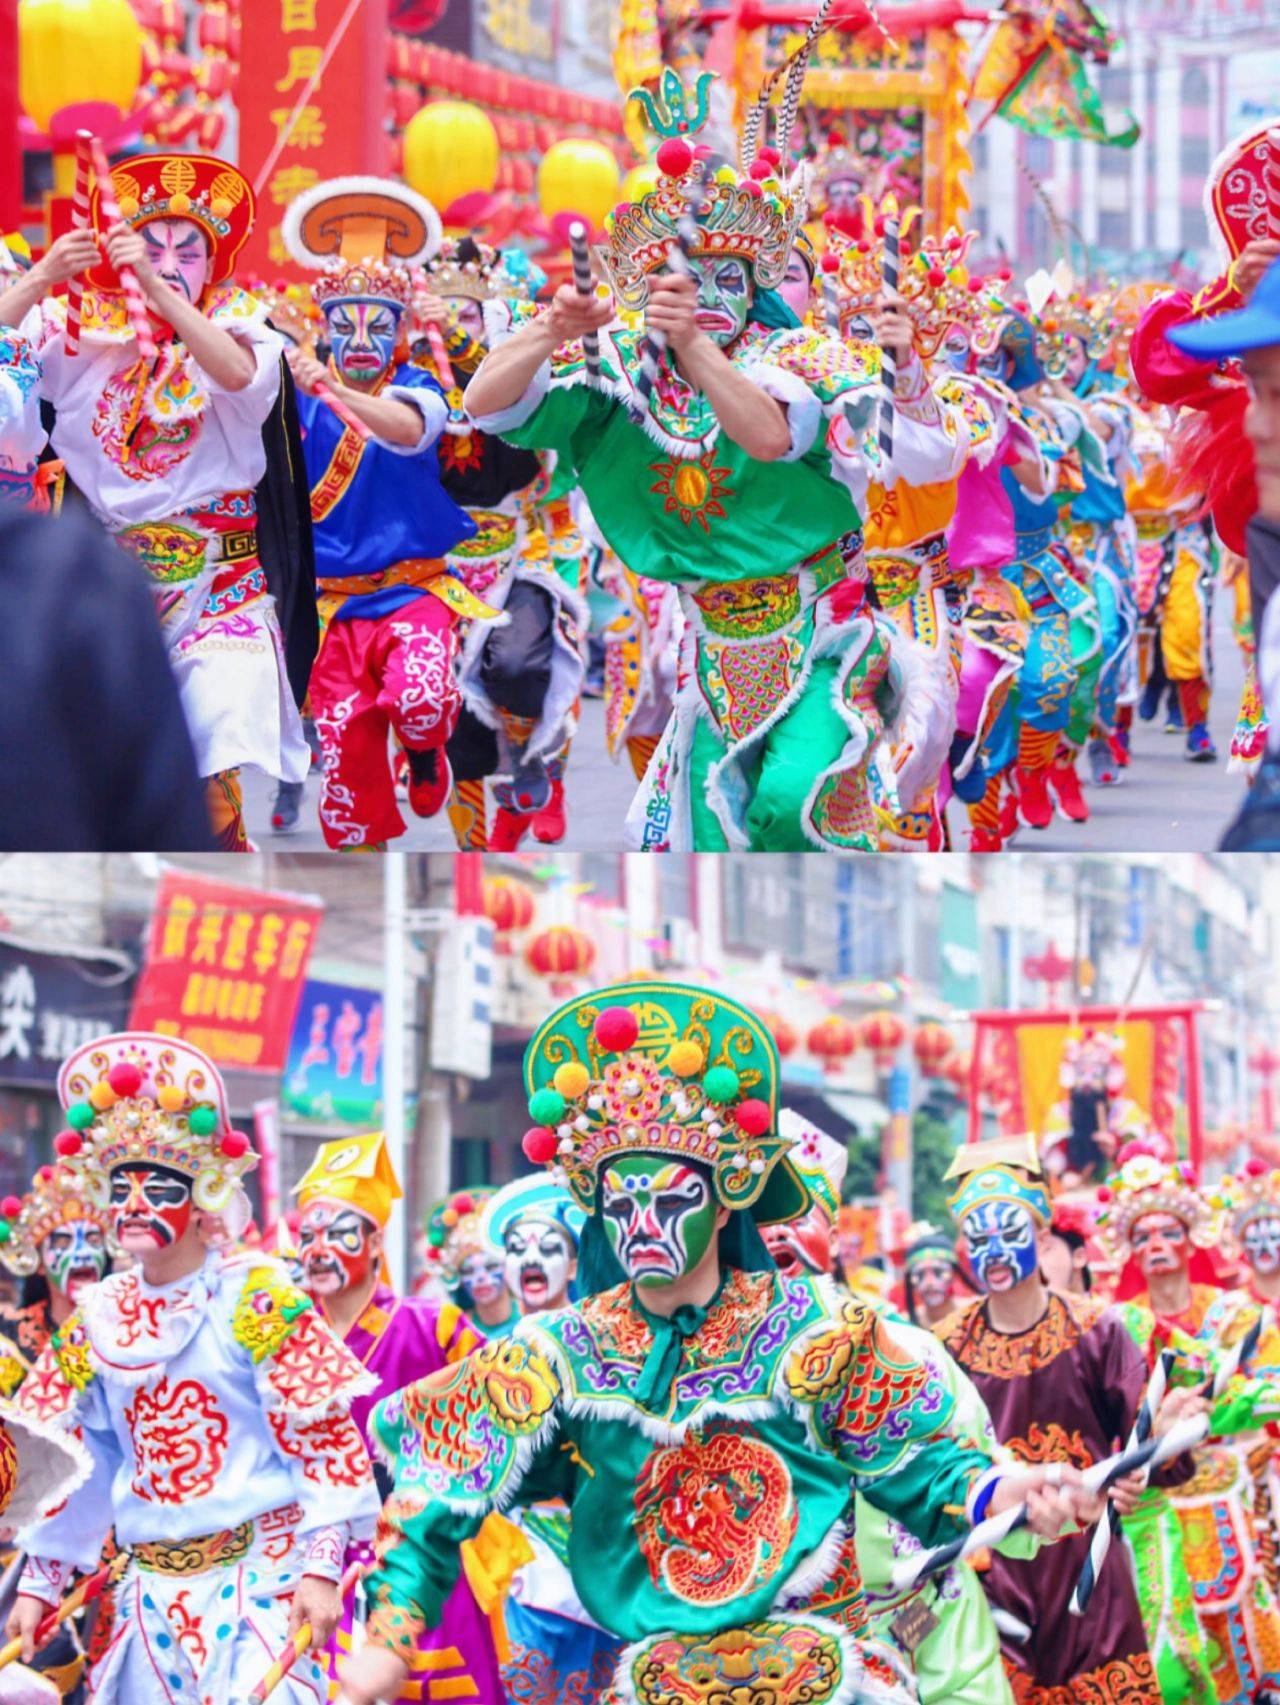 融合中西文化潮汕英歌舞融合了中西方文化,不仅在音乐,服装,舞蹈等